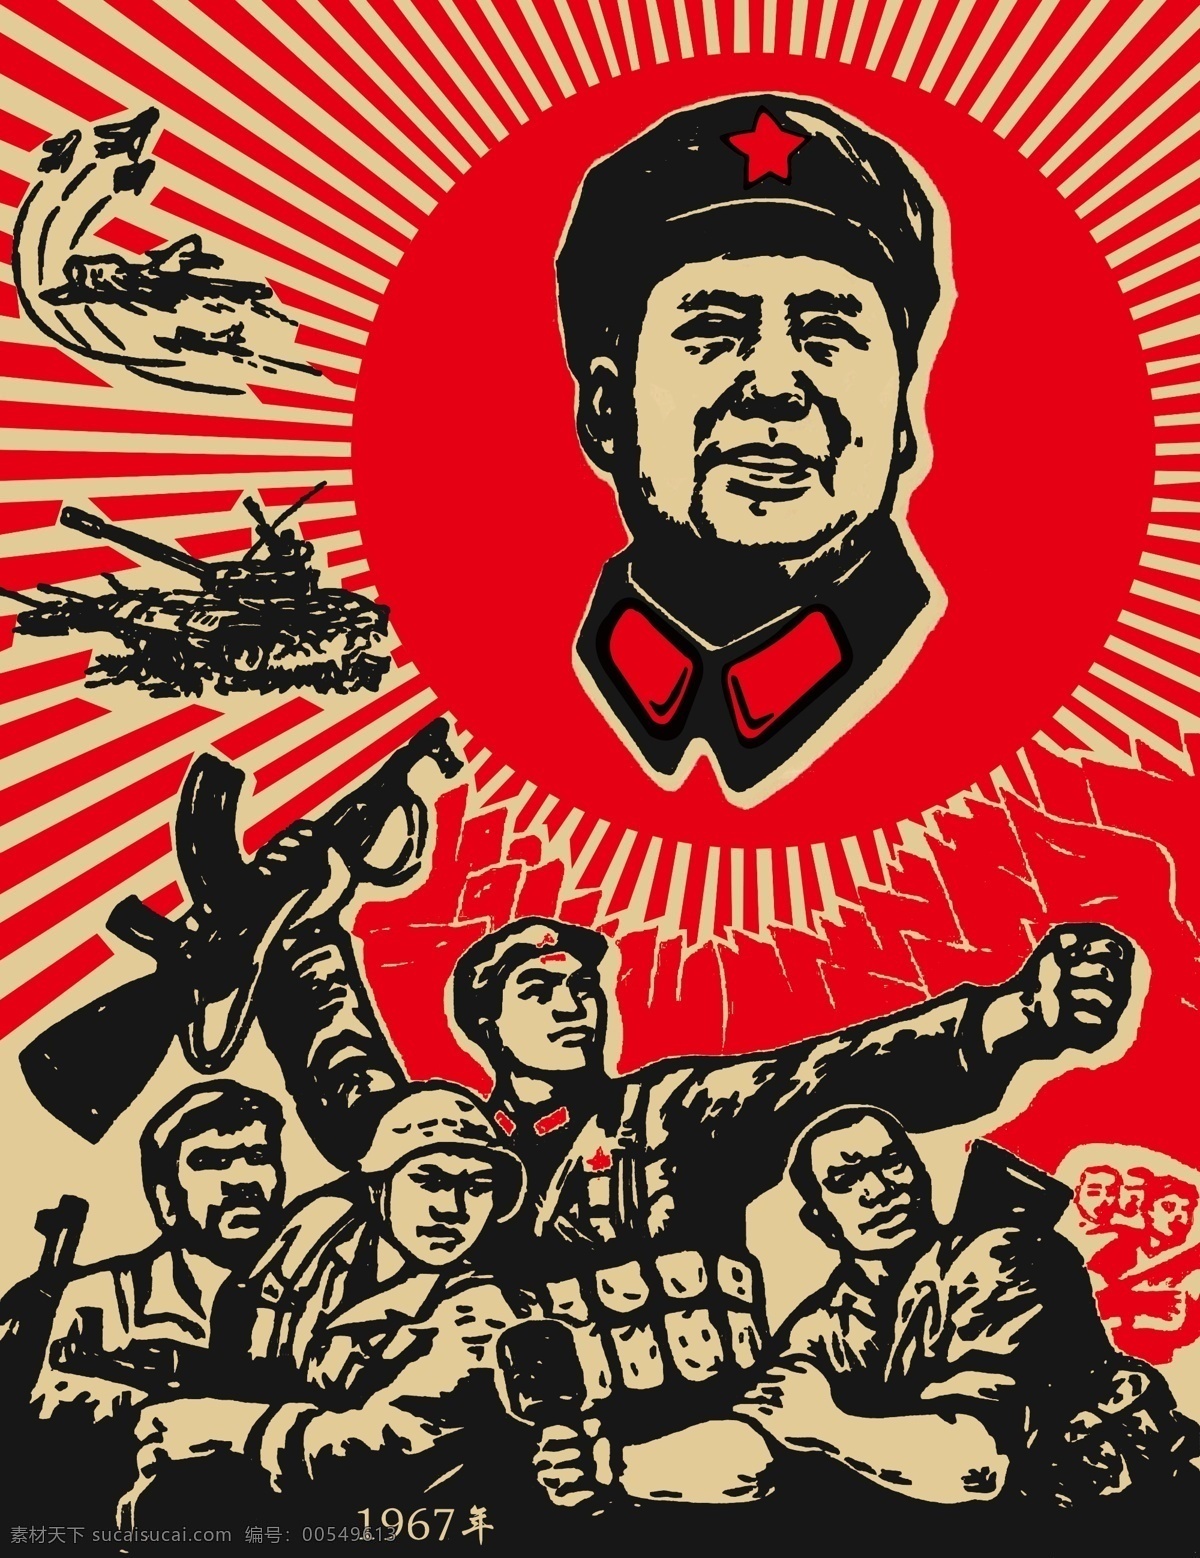 抗日纪念日 抗日 纪念日 士兵 战士 枪 冲锋 毛主席 广告 文化艺术 节日庆祝